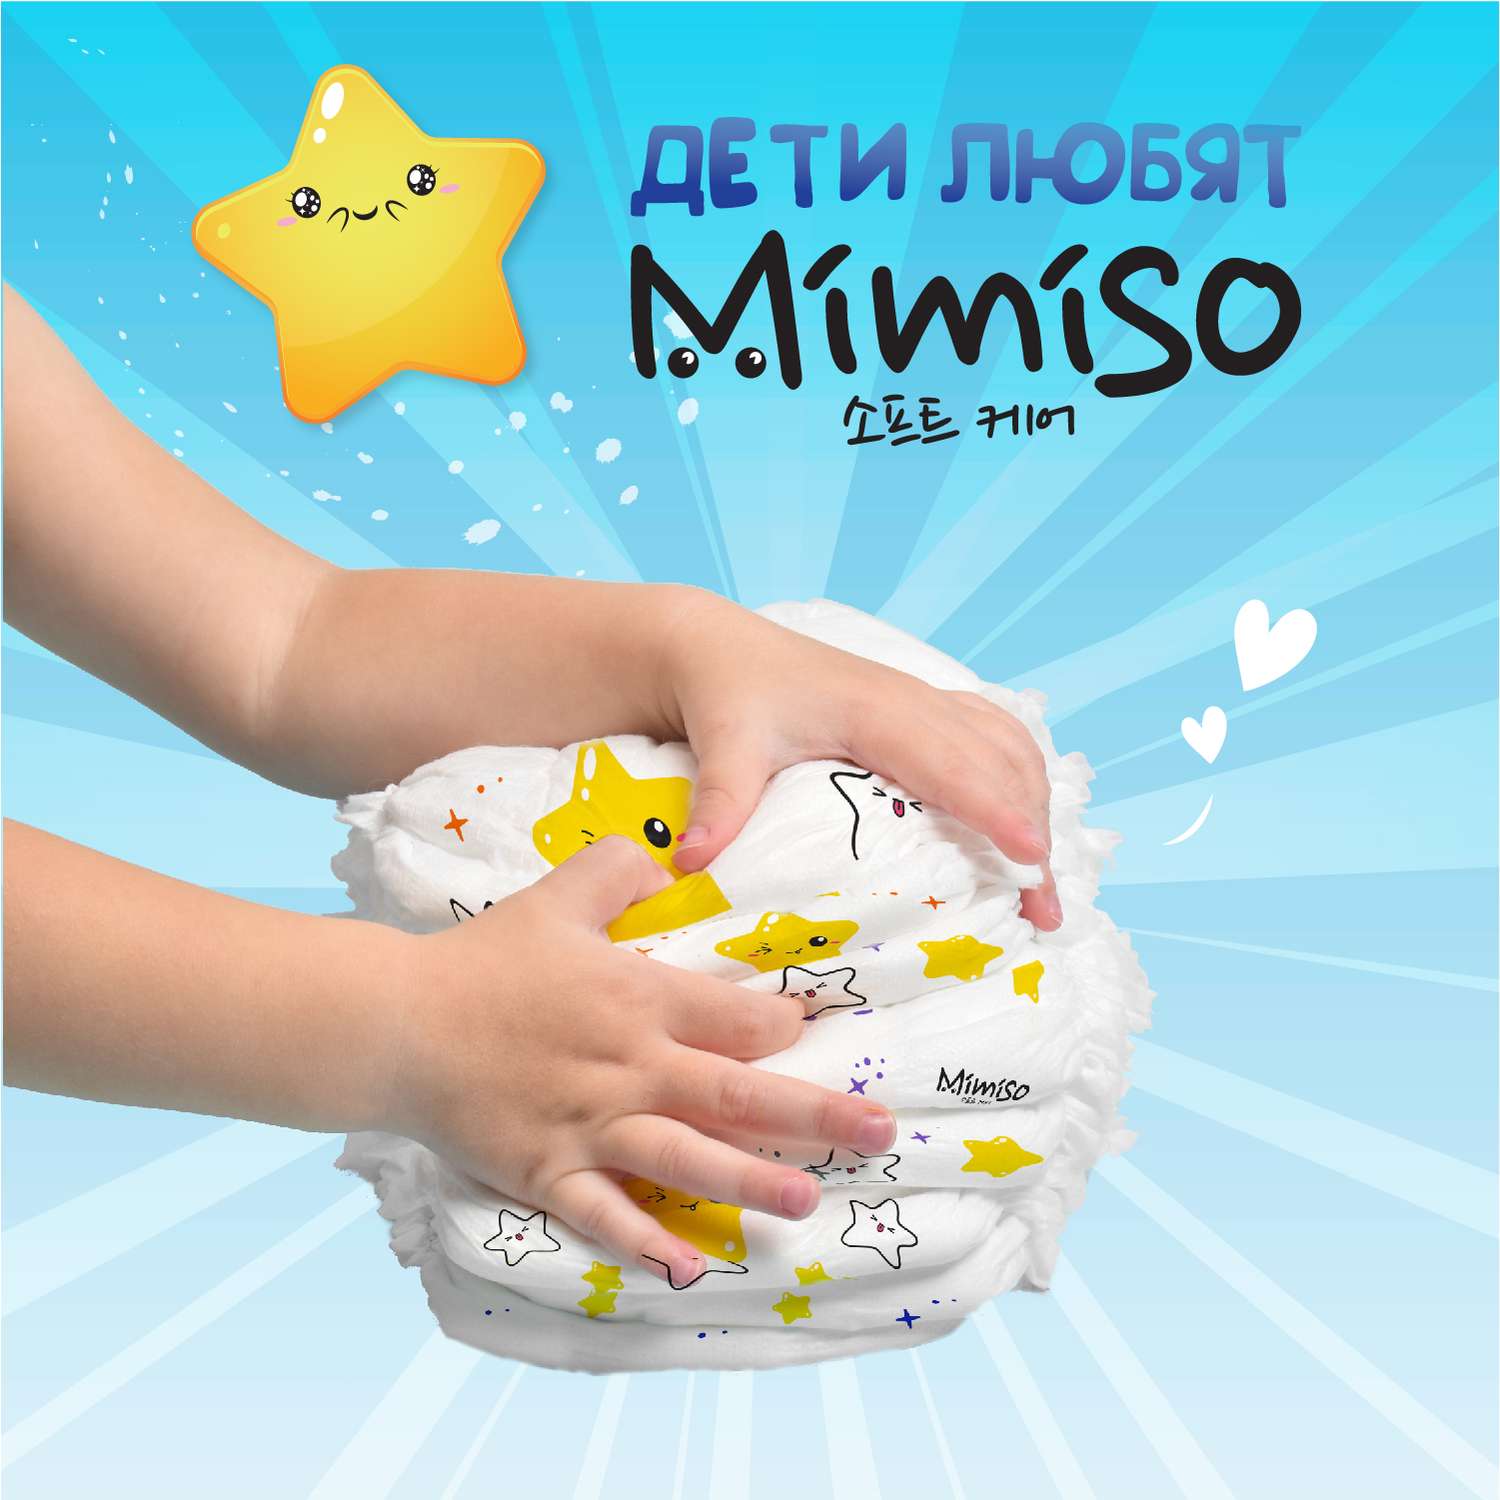 Трусики Mimiso одноразовые для детей 5/XL 13-20 кг mega-pack 78шт - фото 5